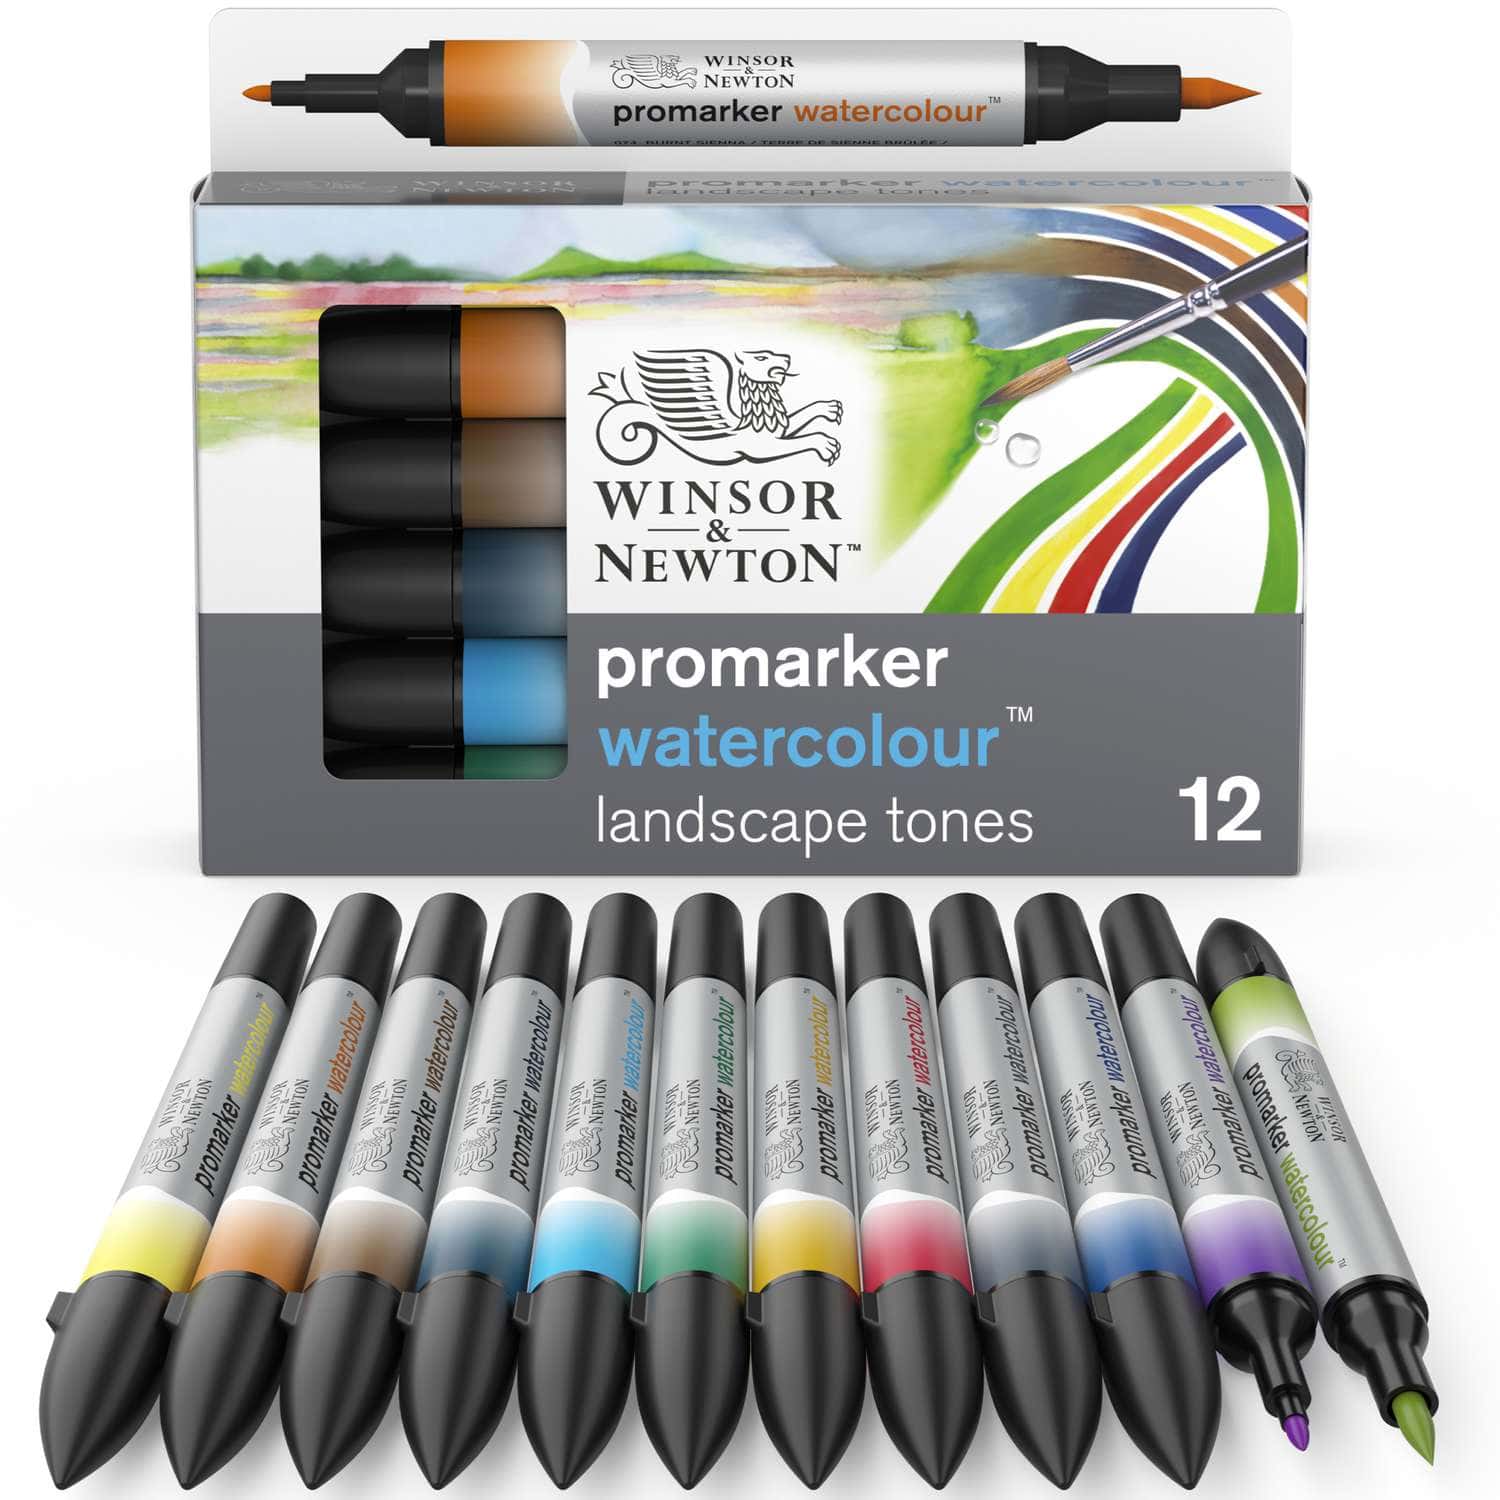 Coffrets de marqueurs aquarelle Promarker Watercolour Winsor